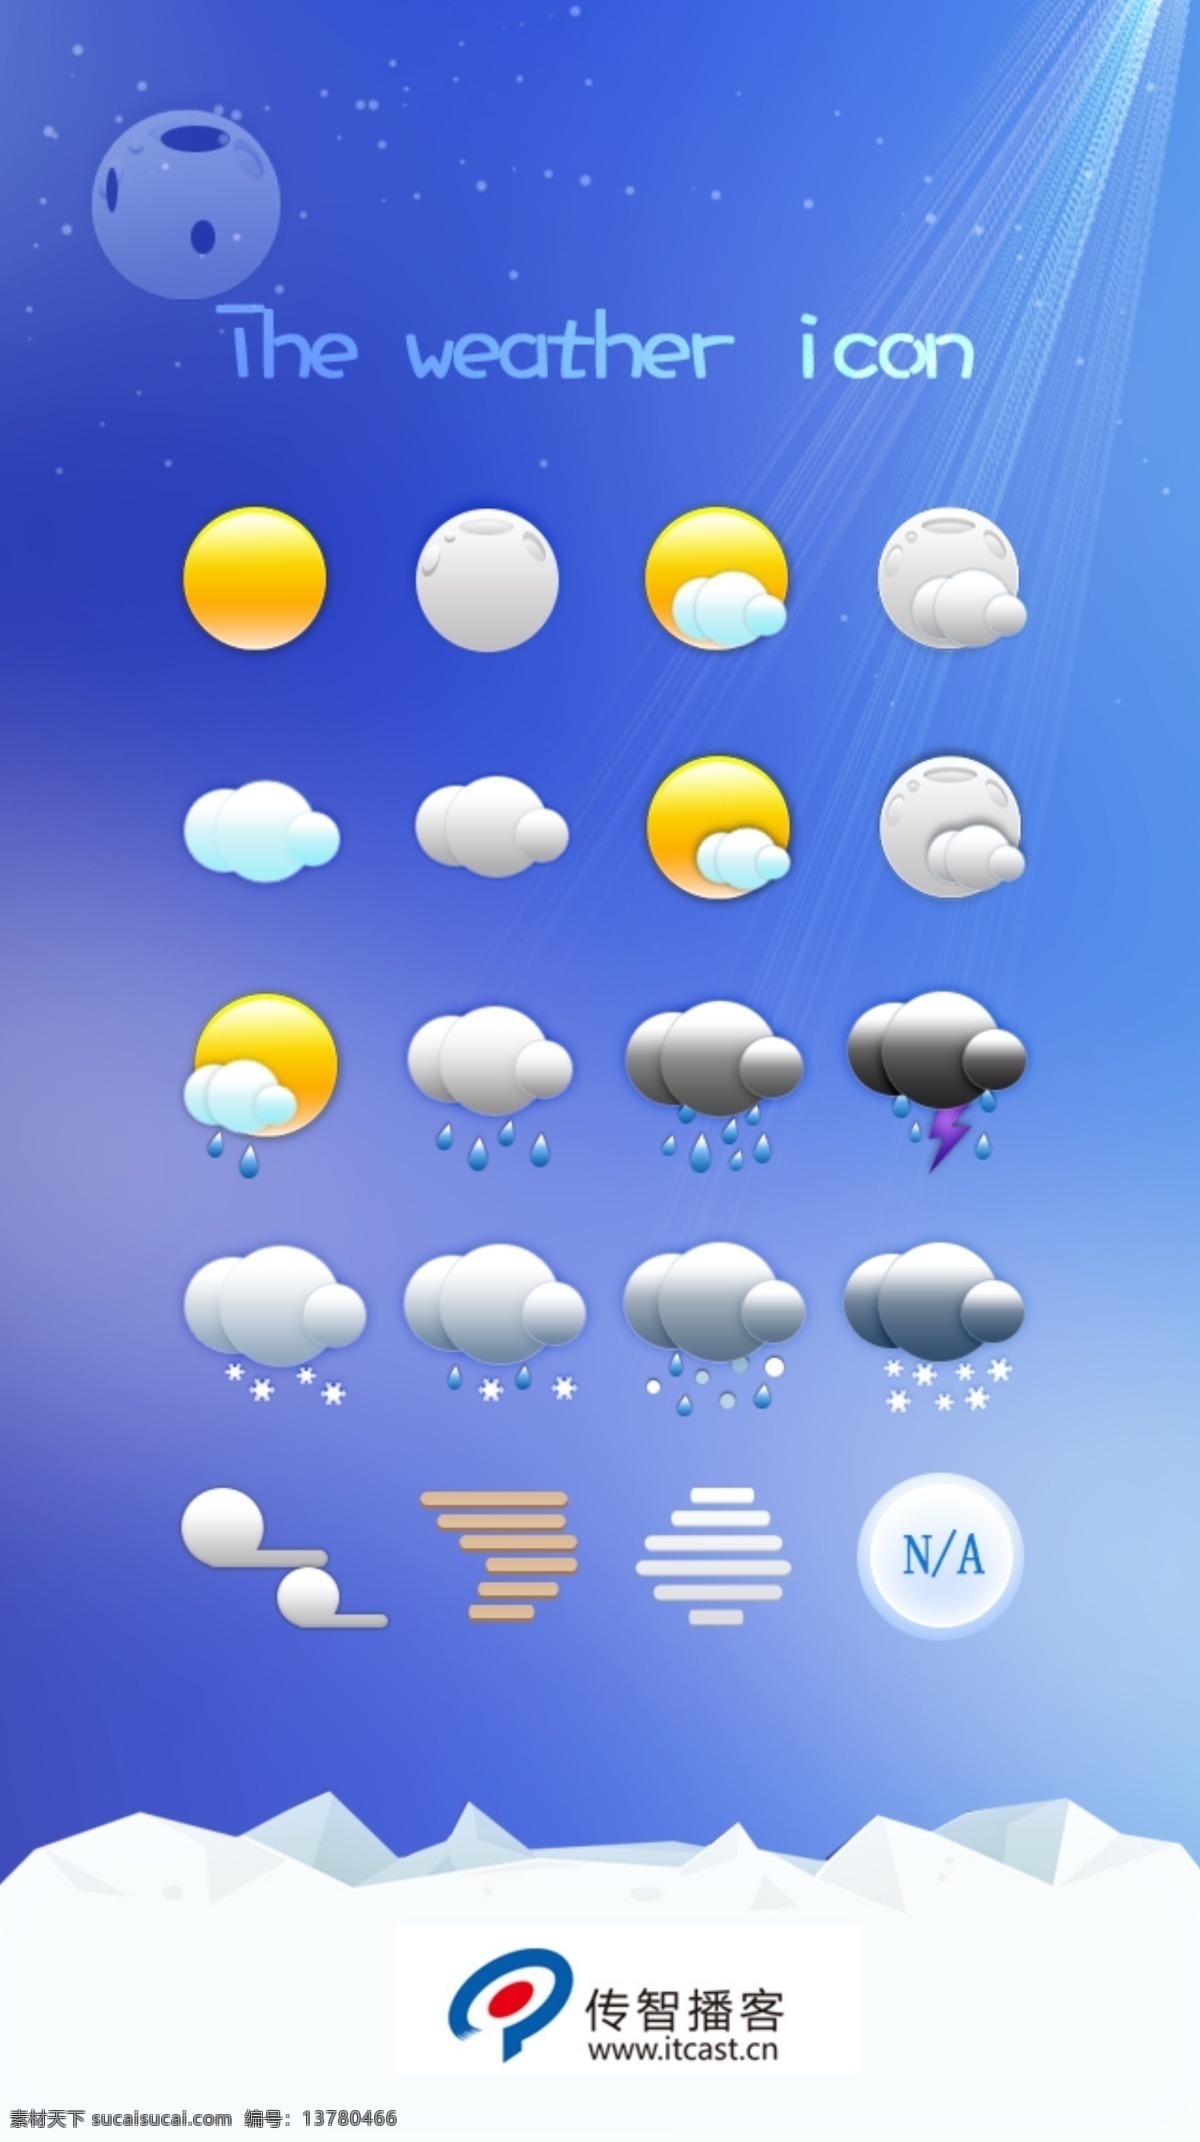 其他模板 天气app 网页模板 源文件 天气 app 模板下载 漂亮 图标 手机